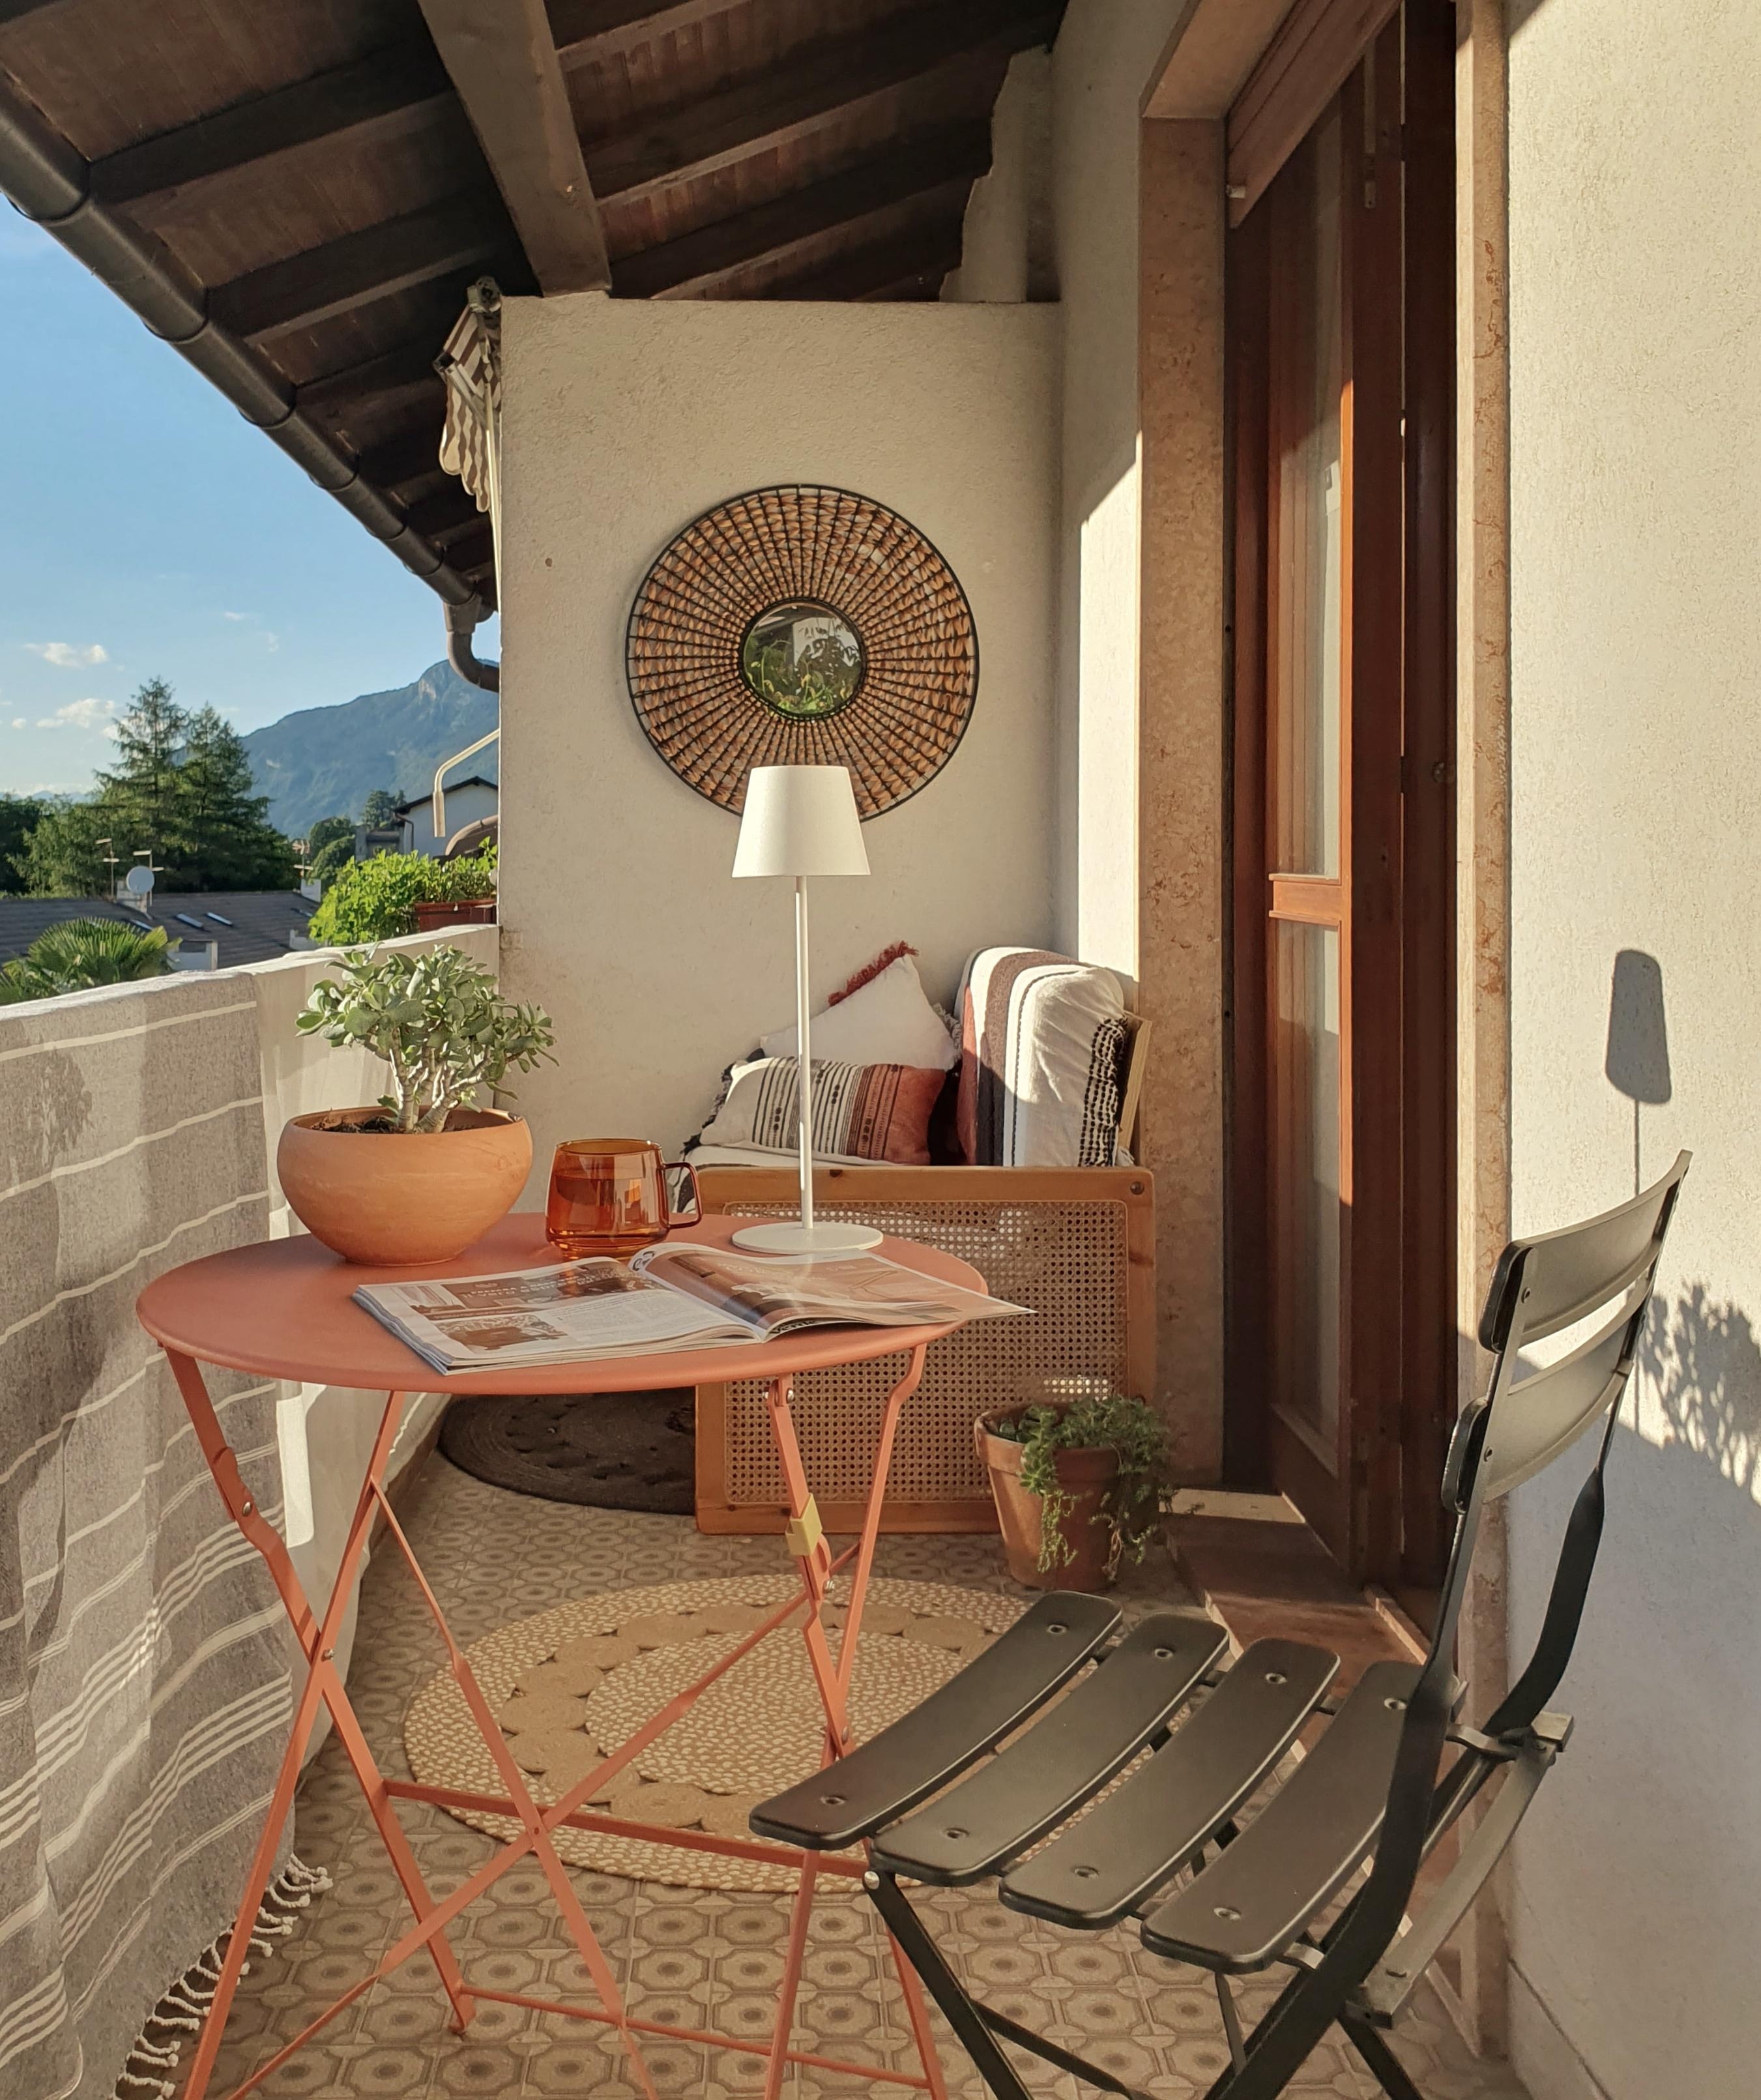 #Sommer #couchliebt #balkon #altbau #italien 